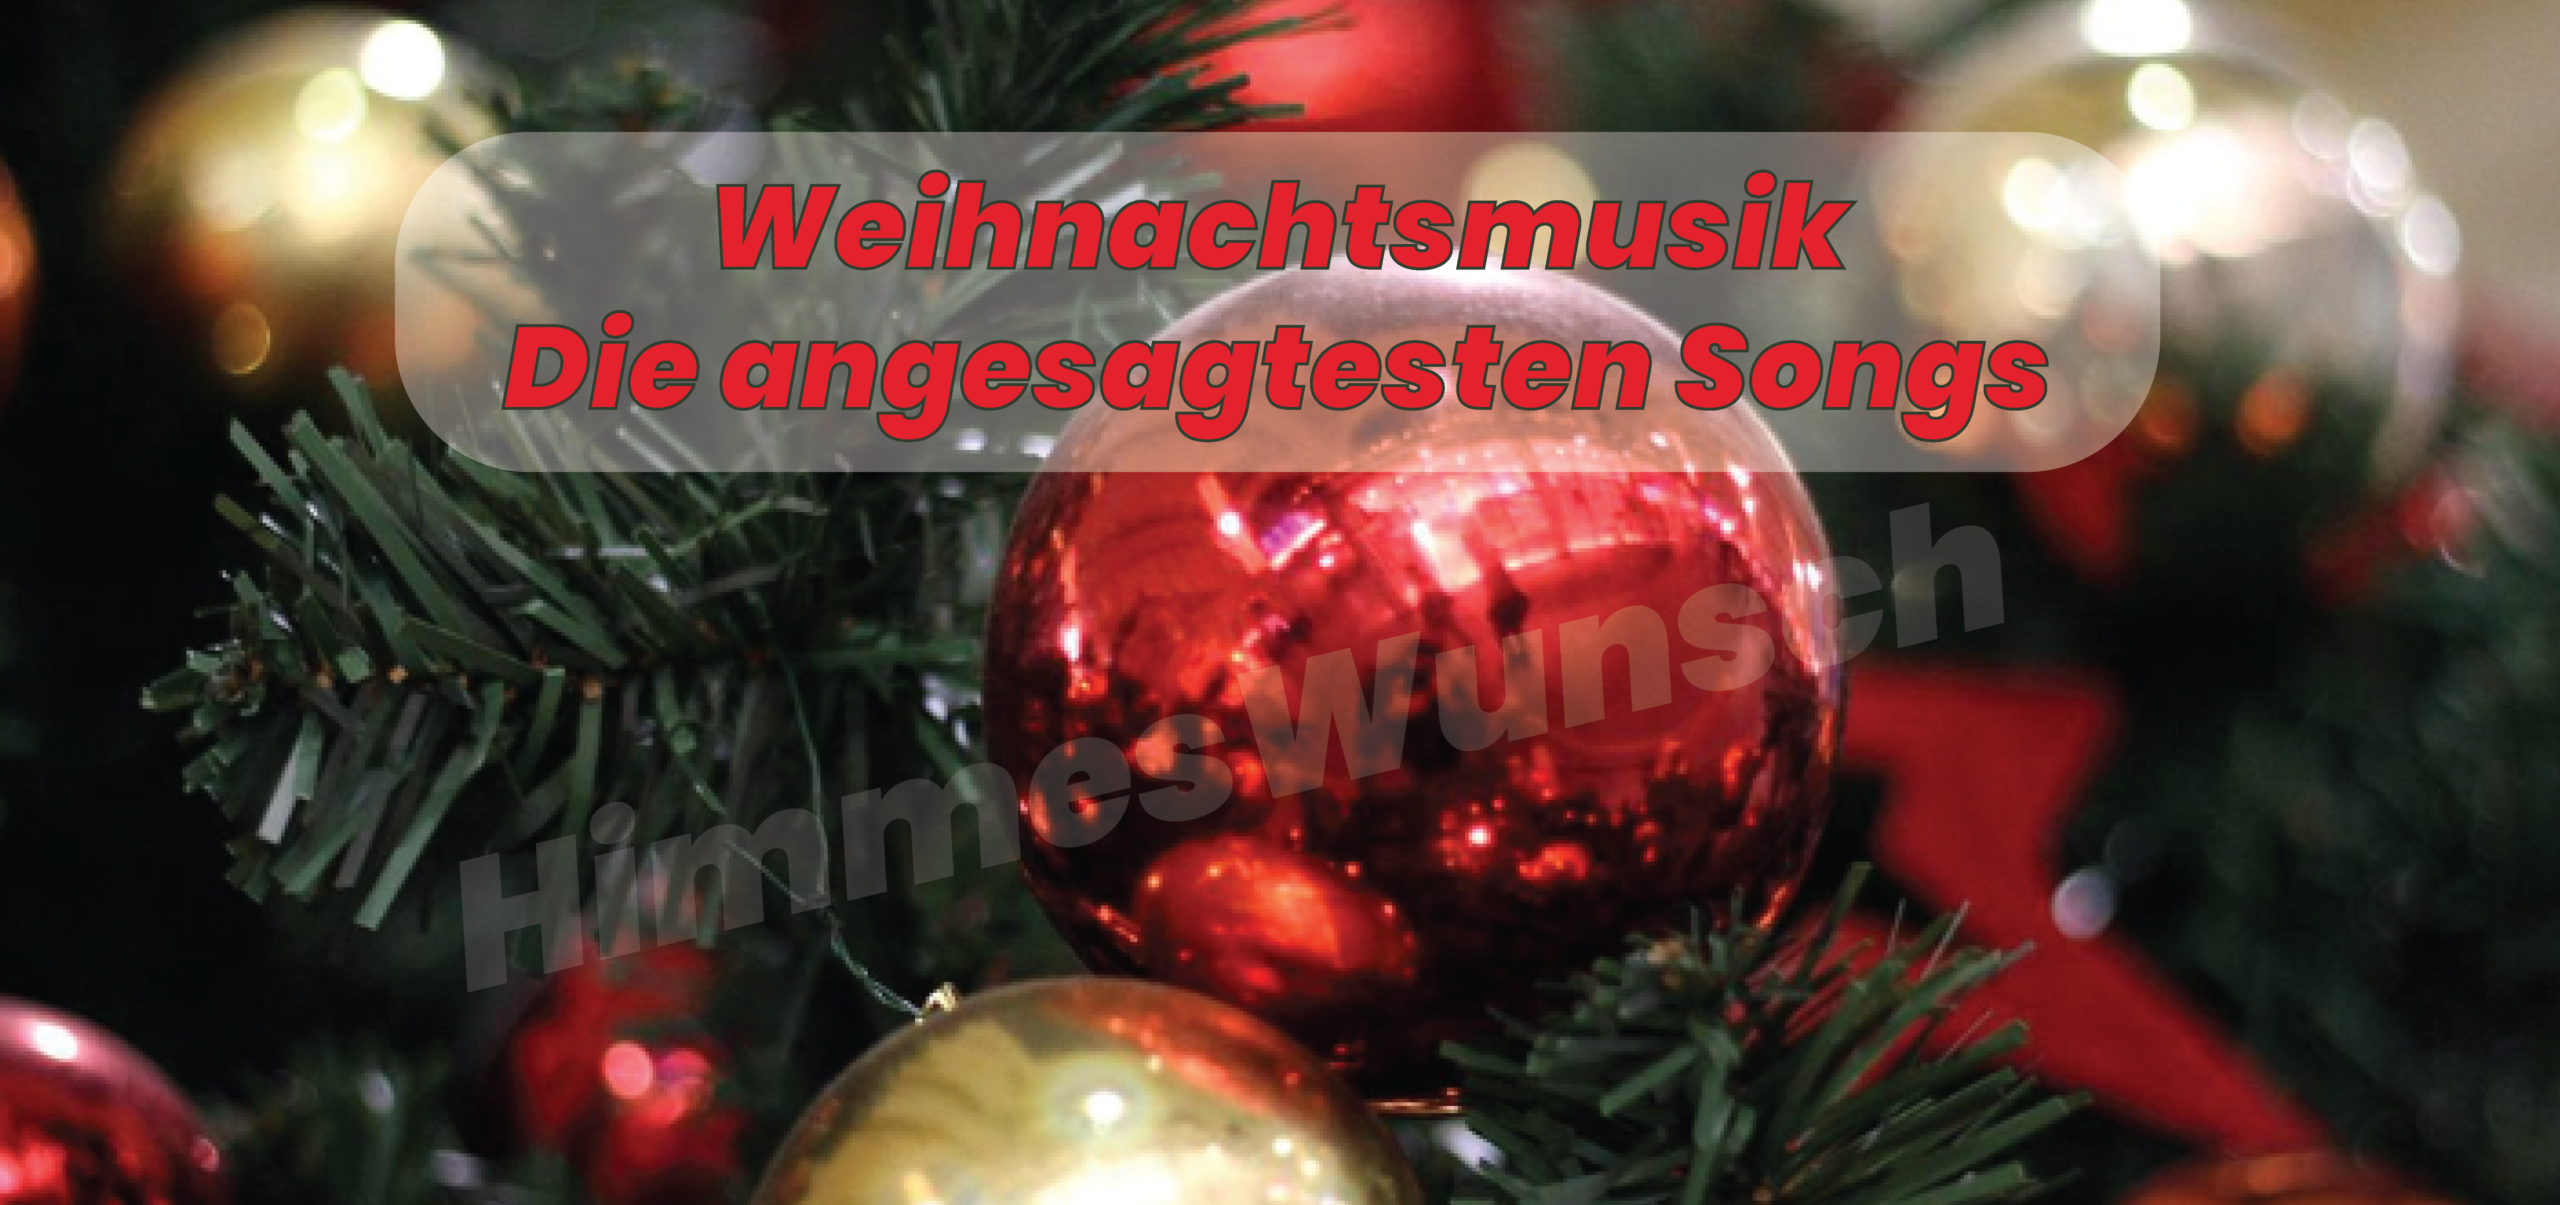 Weihnachtsmusik Die angesagtesten Songs